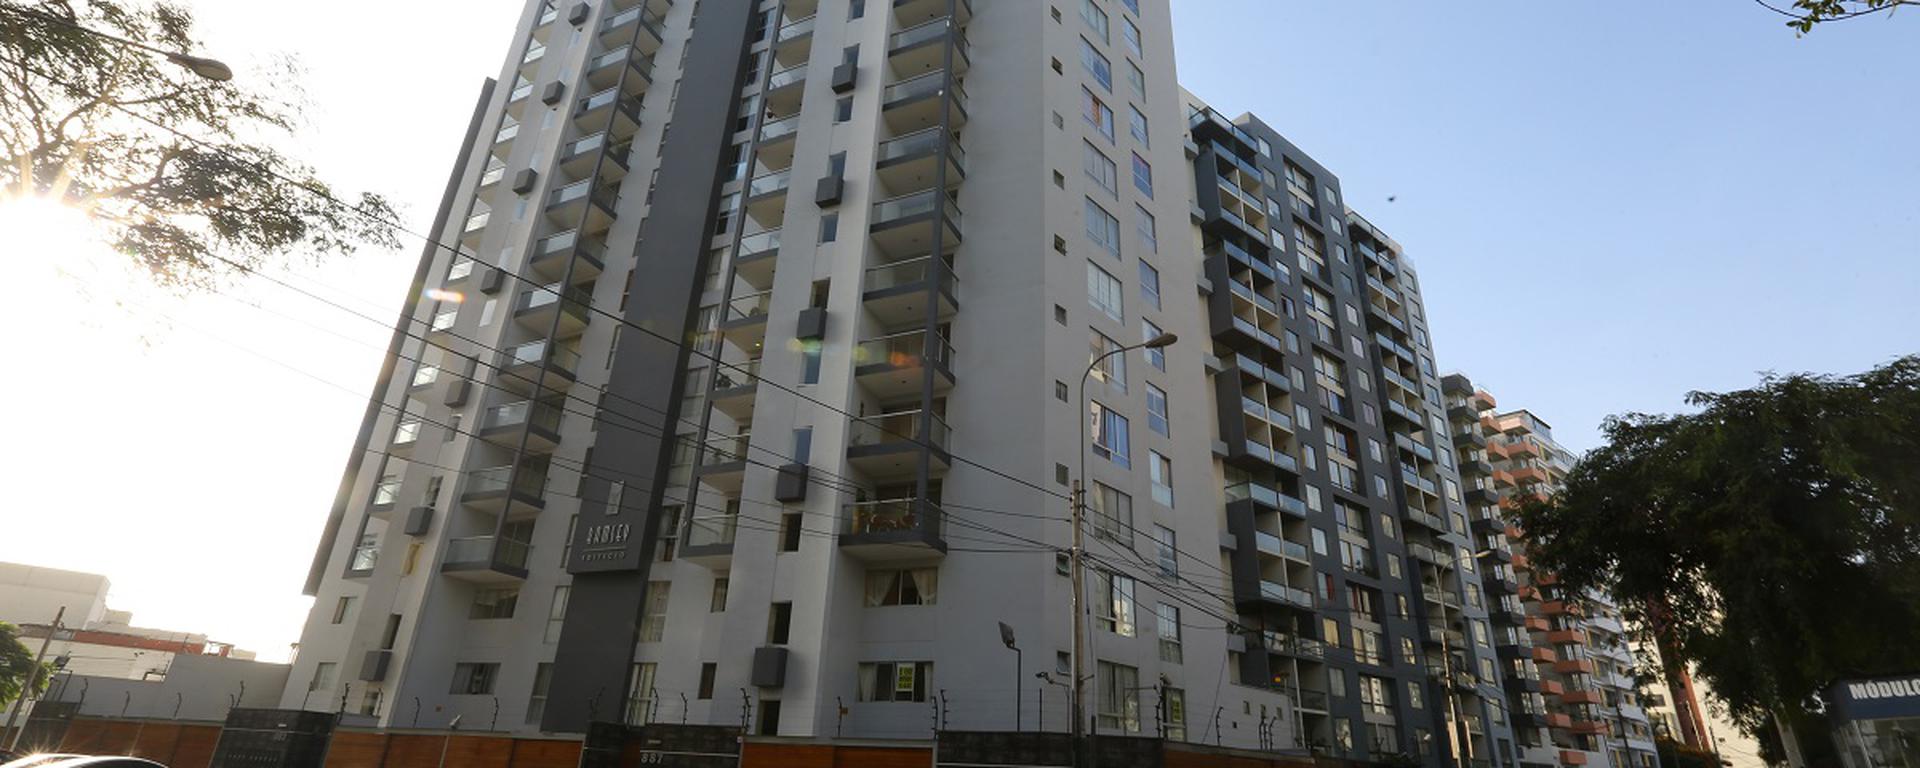 ¿Por qué subió el precio de las viviendas en 17,7% en Lima Metropolitana?